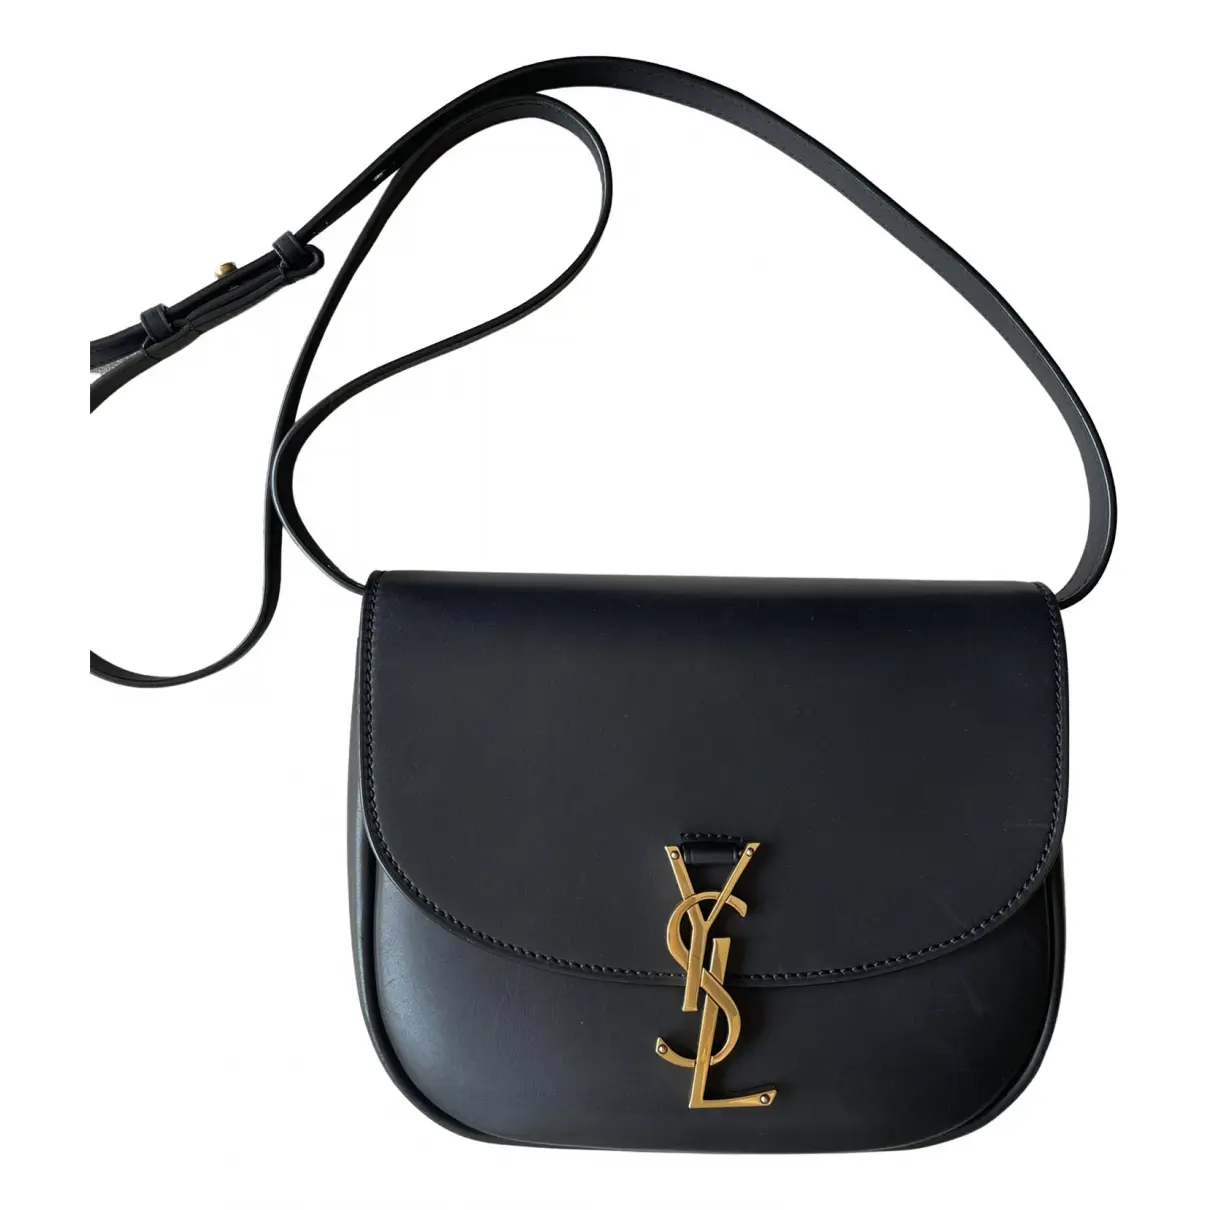 Kaia leather handbag Saint Laurent